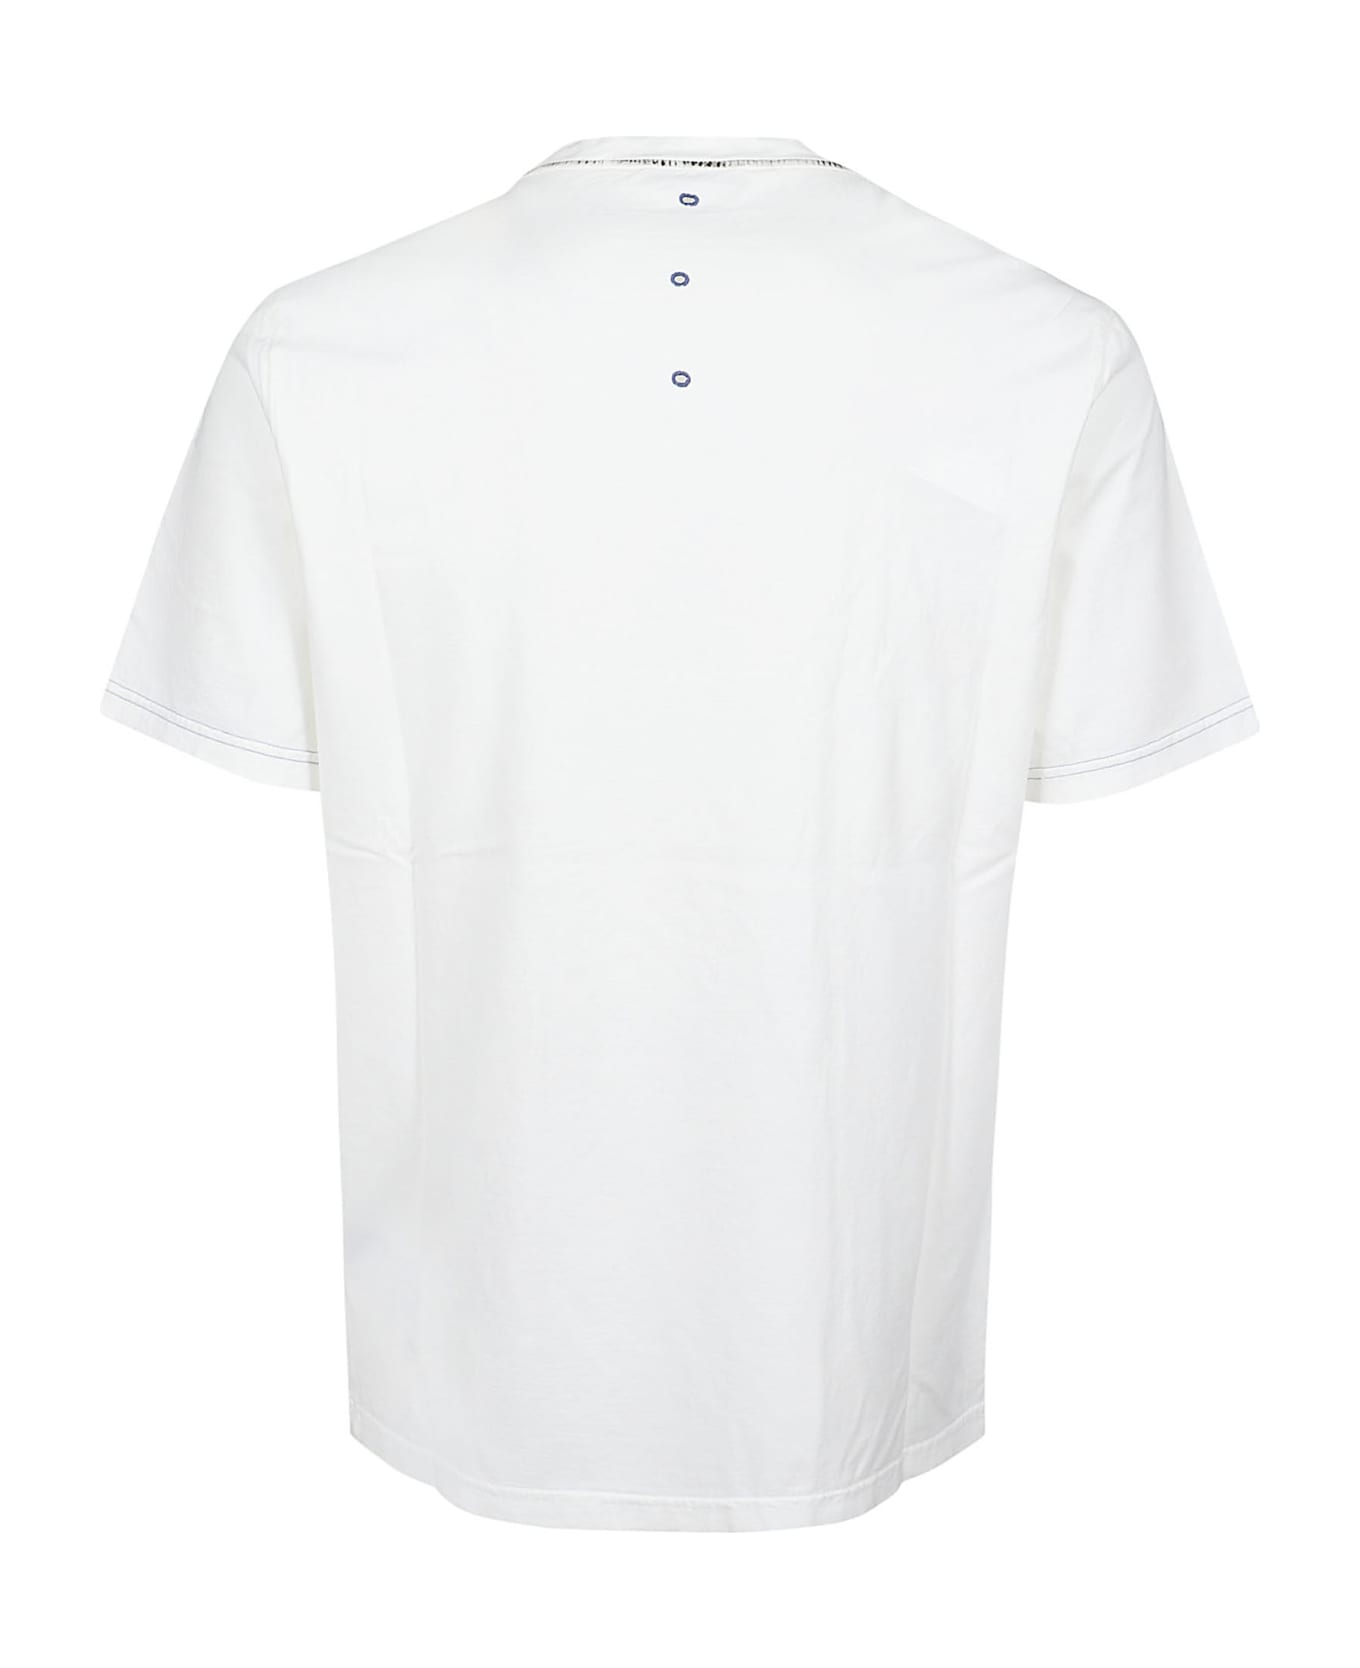 Premiata Neverwhite T-shirt - White